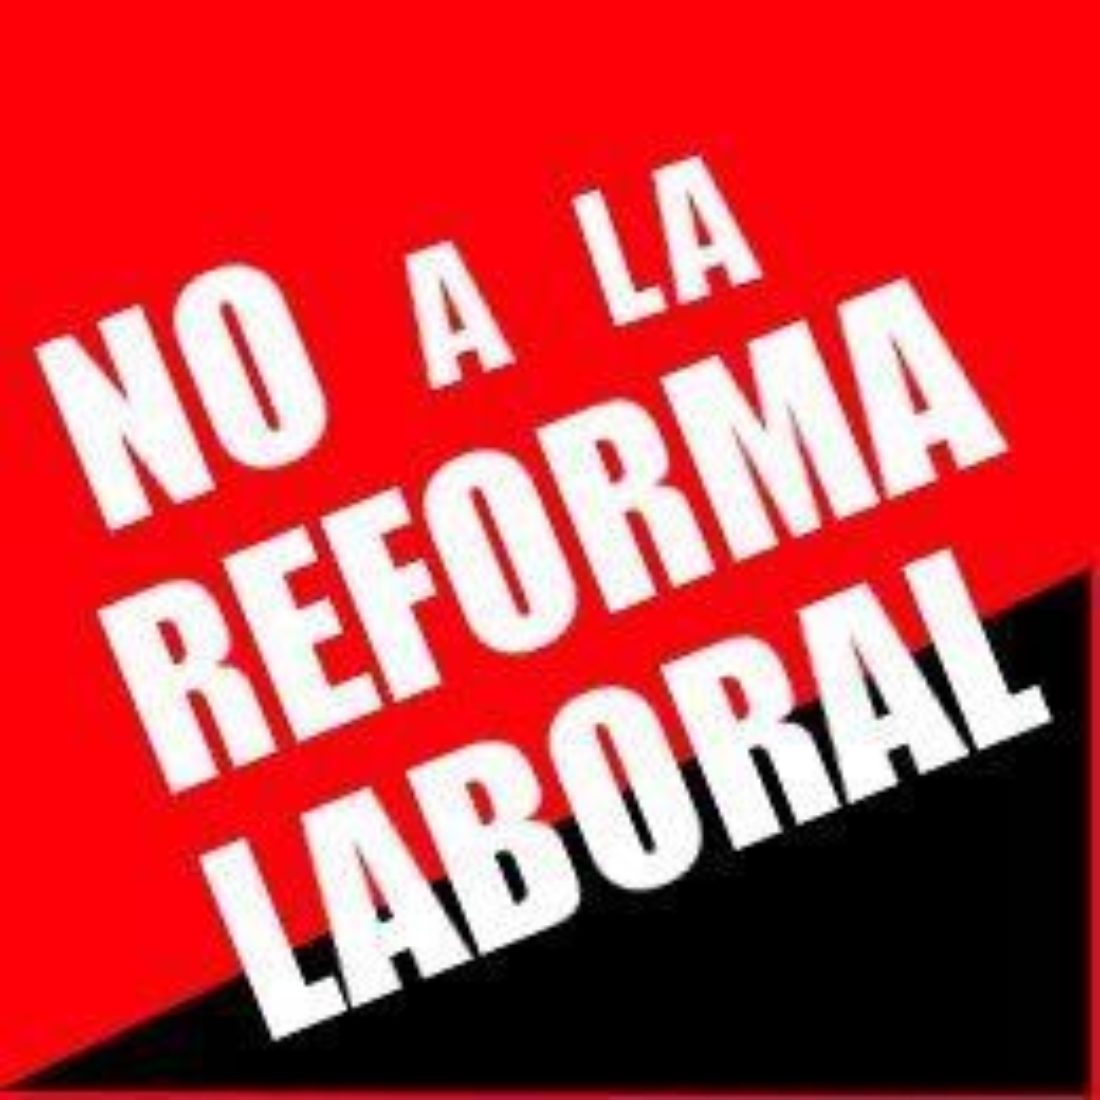 Sant Feliu de Codines: Charla sobre la reforma laboral